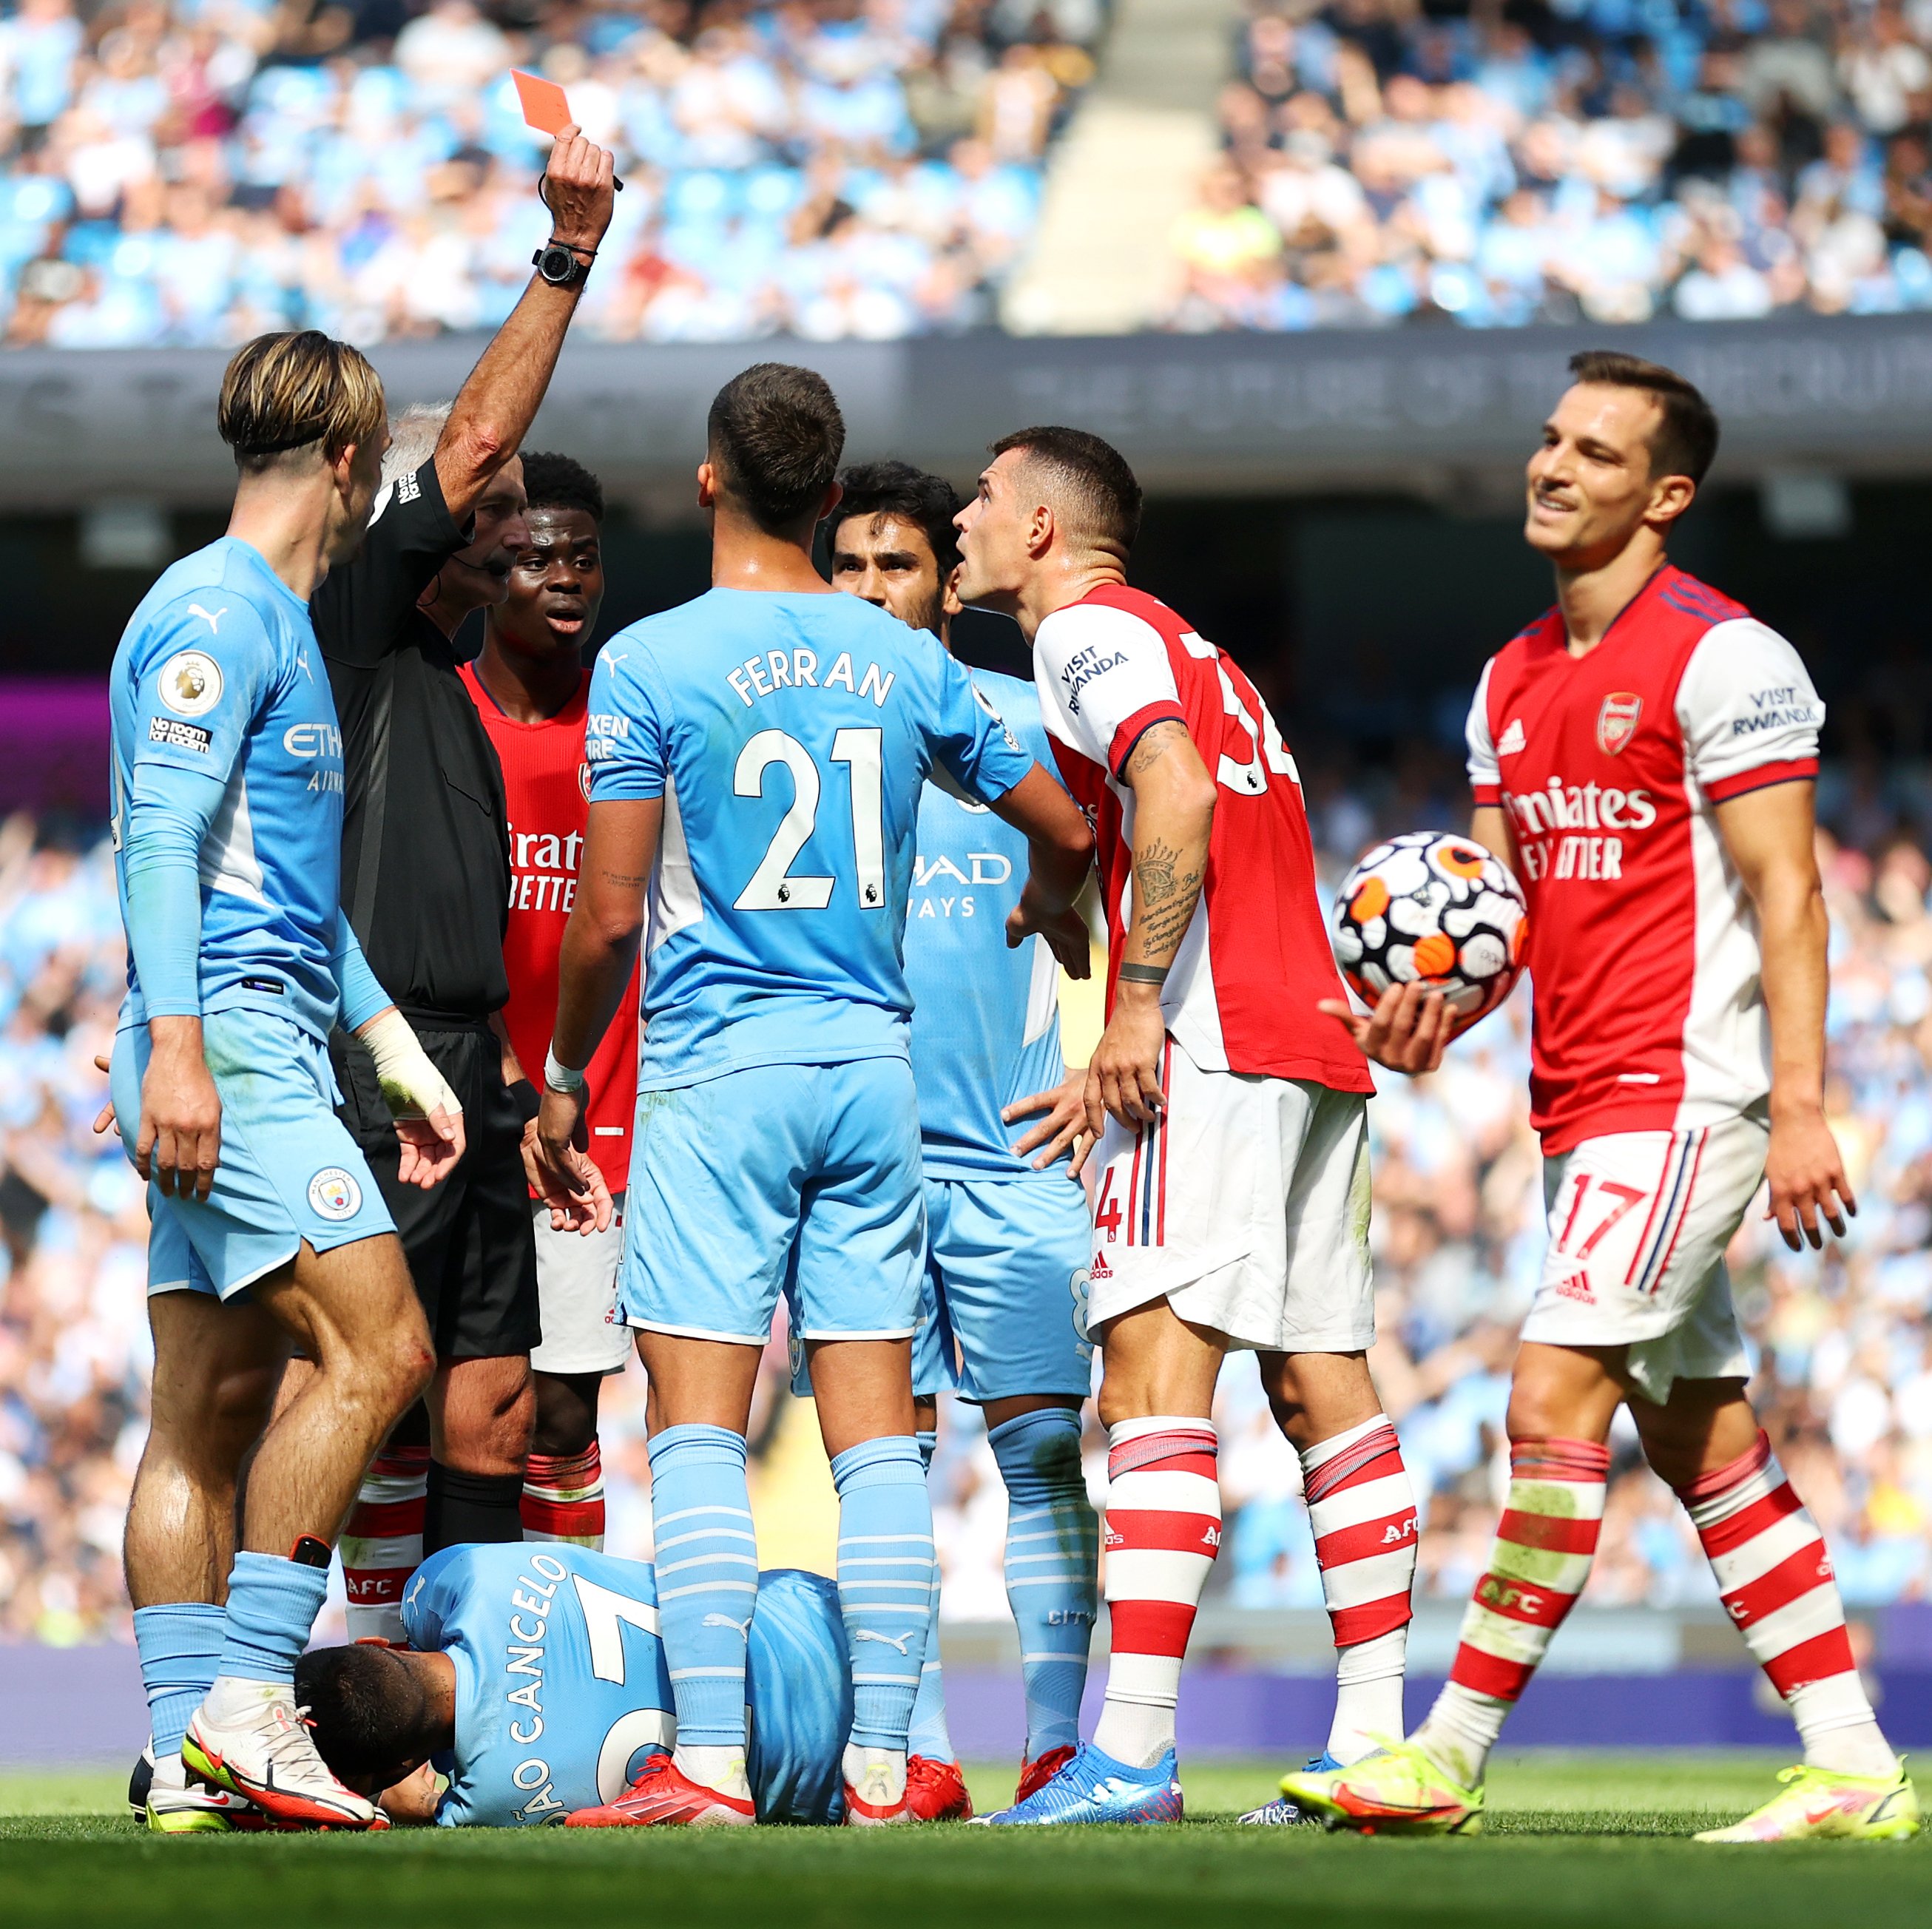 Ryd op uddanne kjole GOAL on Twitter: "35' Granit Xhaka red card 42' Gabriel Jesus makes it 3-0  Arsenal are in DEEP trouble 😬 https://t.co/5JqBirwSmX" / Twitter